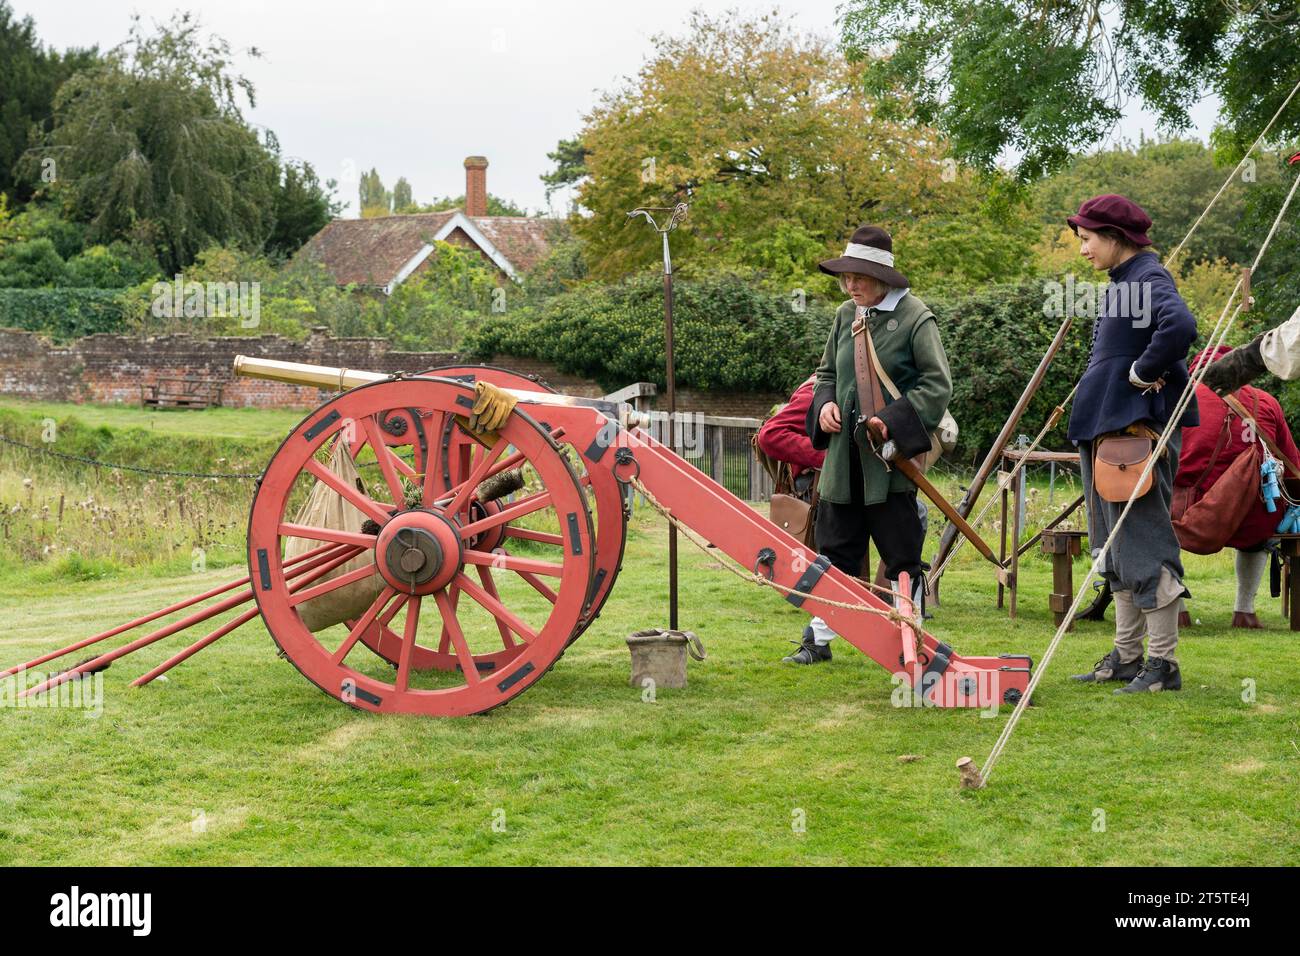 Rievocazione storica dell'assedio di Basing House, dalla guerra civile inglese da parte della società inglese per la guerra civile del 16.09.23 Foto Stock